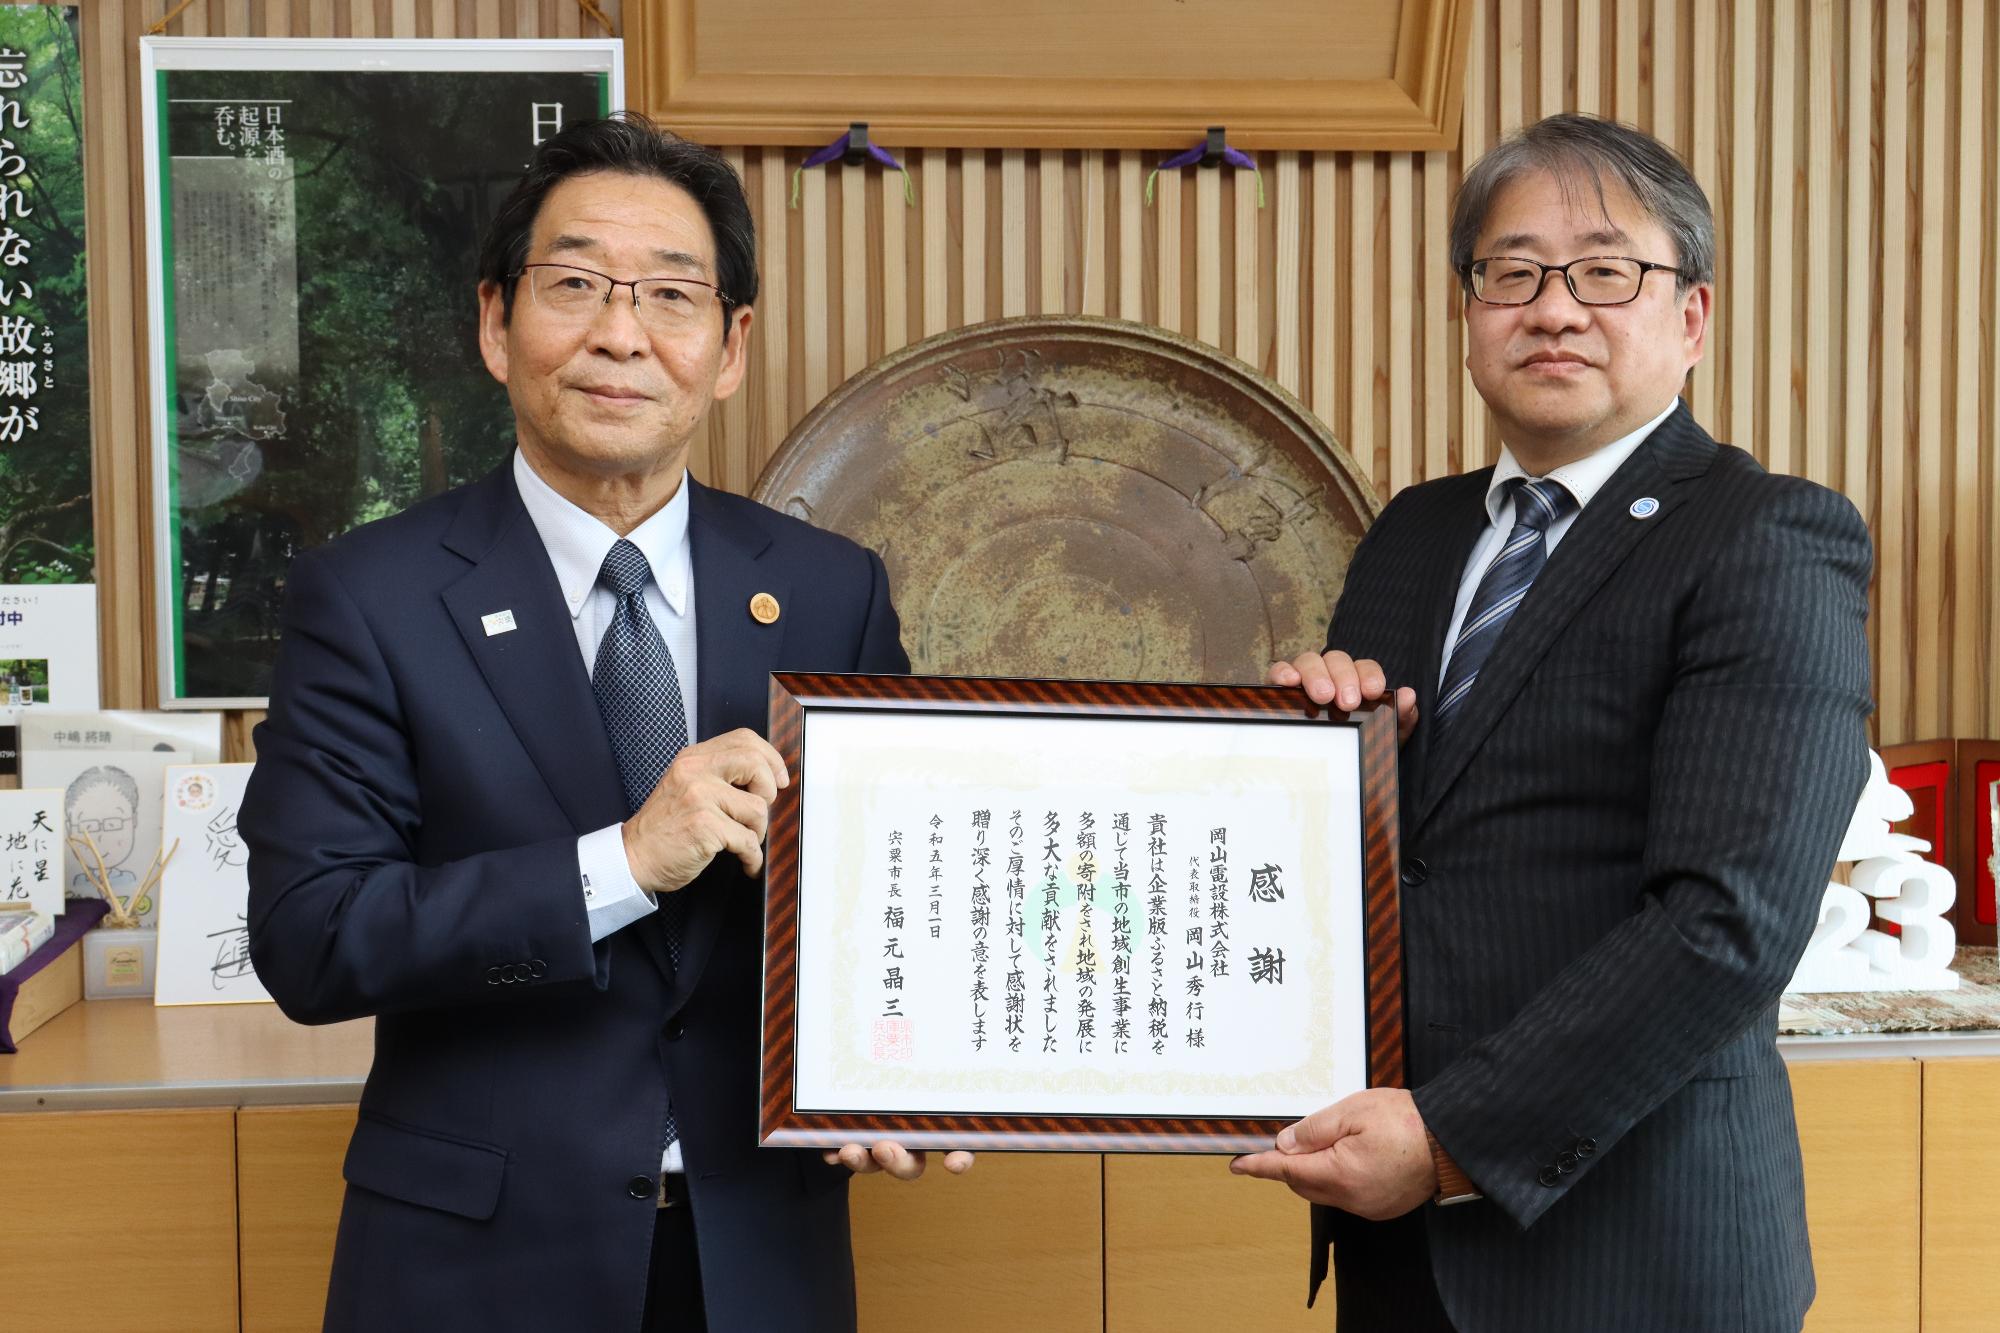 岡山電設株式会社 岡山代表取締役と福元市長が二人並んで感謝状に手を添えている写真